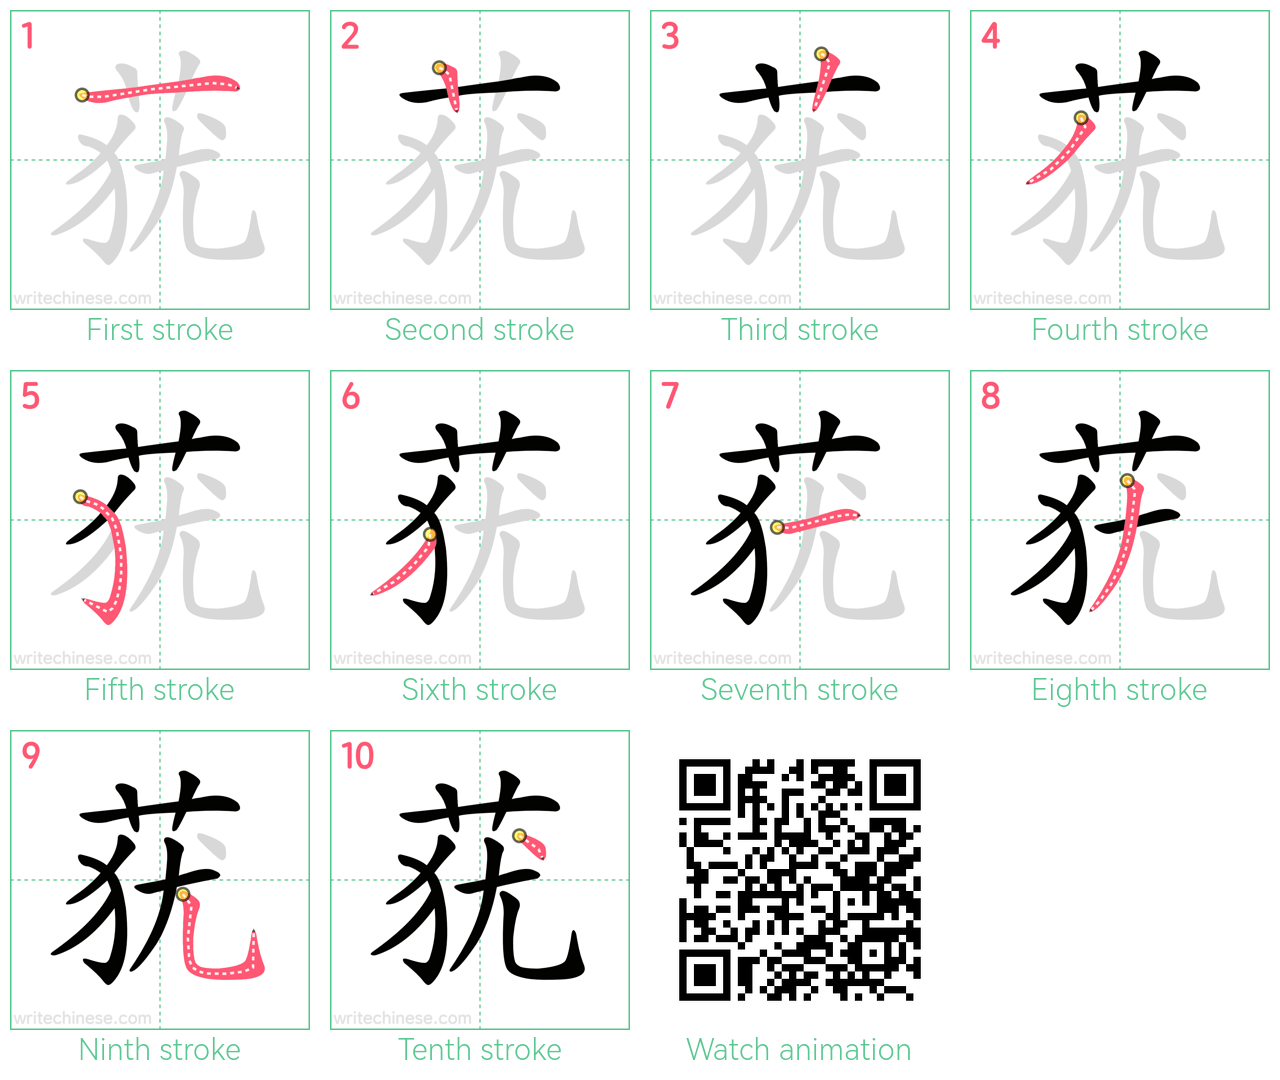 莸 step-by-step stroke order diagrams